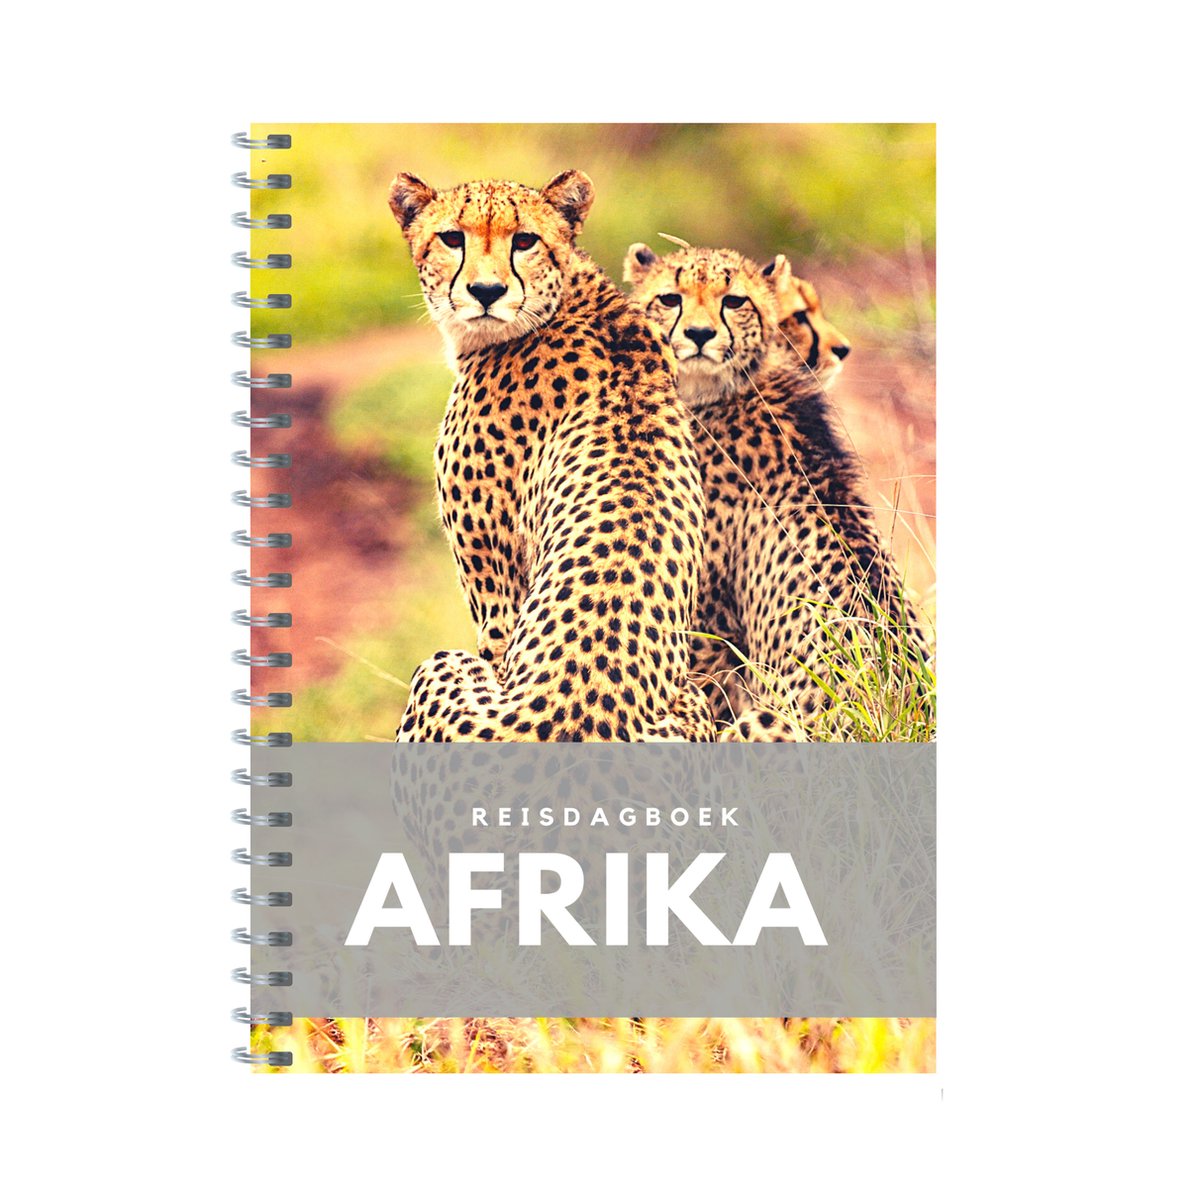 Reisdagboek Afrika (safari)